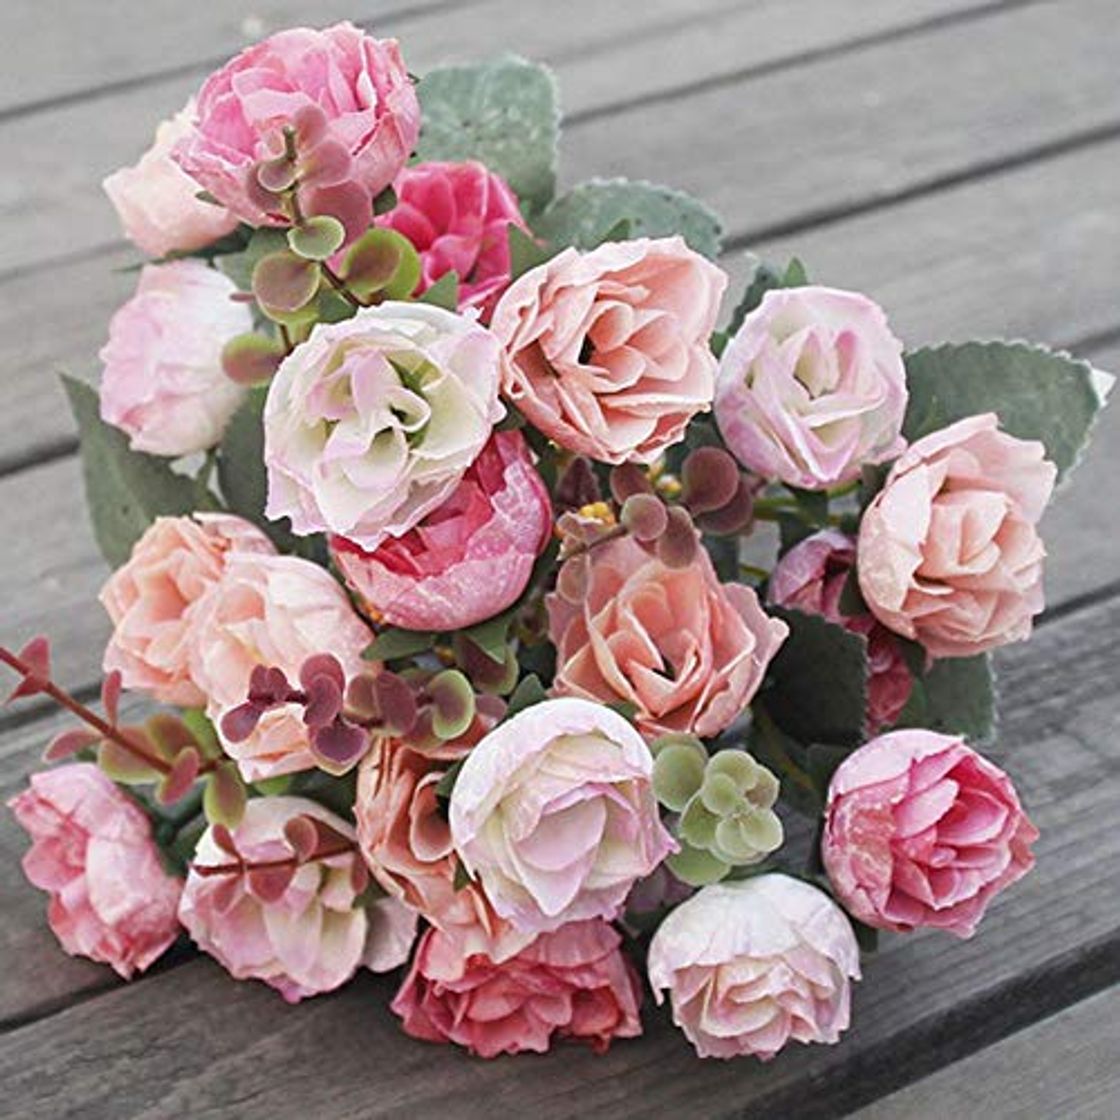 Barley33 21 Cabezas Artificiales Flores de Seda Rosa Elegante Elegante Ramo de